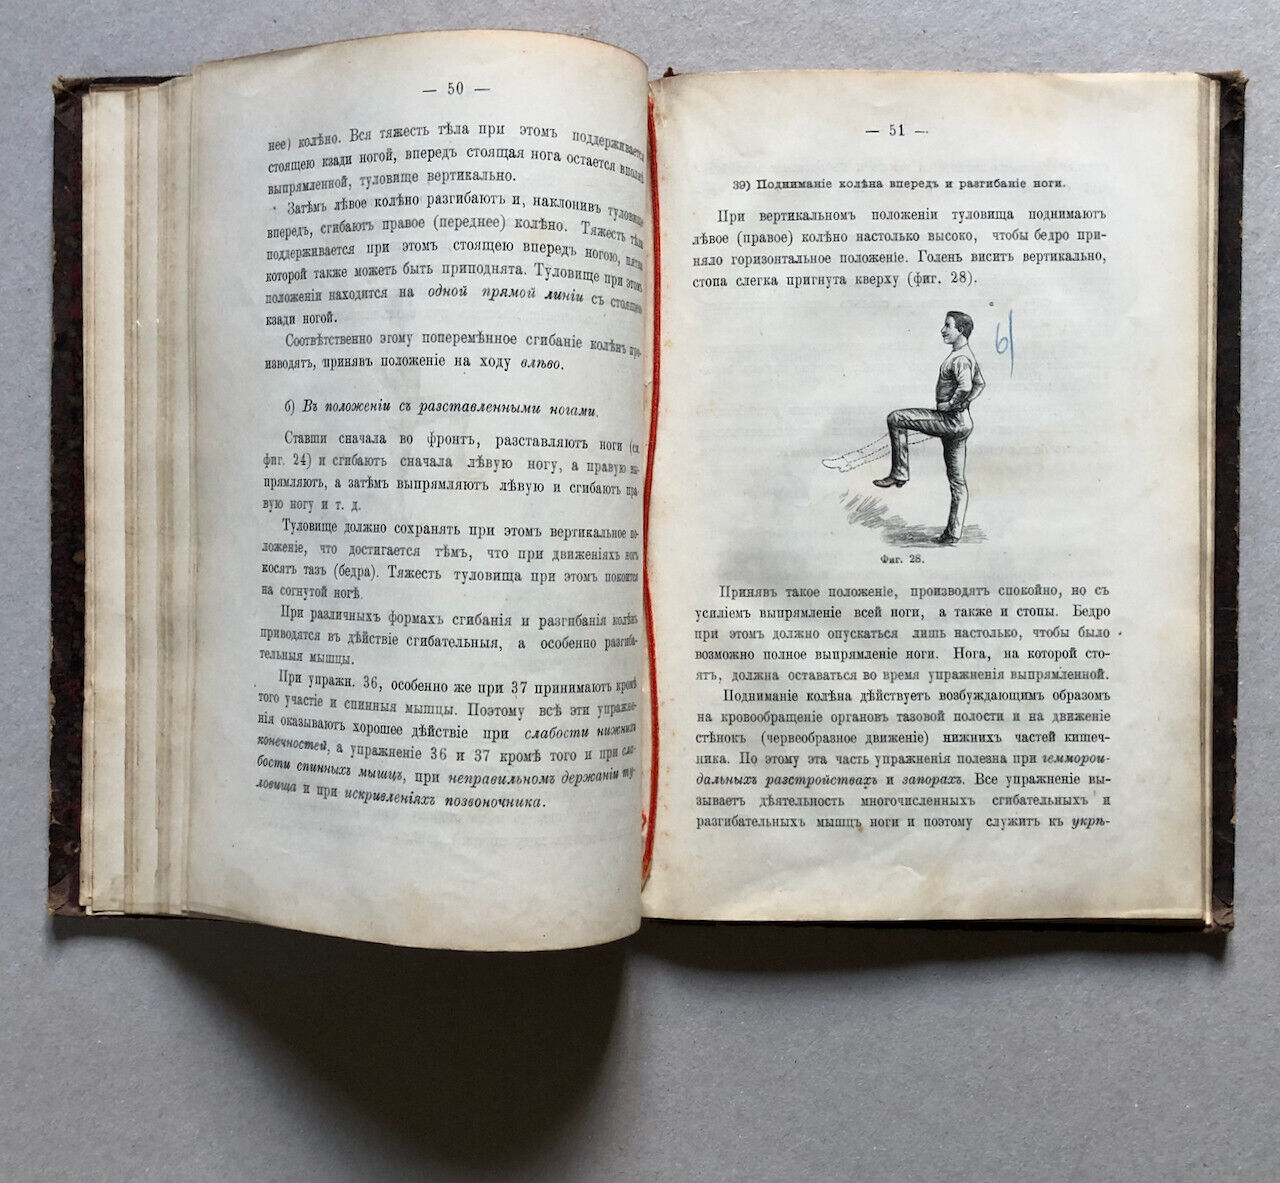 Angerstein & Eskler - manuel de gymnastique en russe — Saint-Petersbourg — 1888.